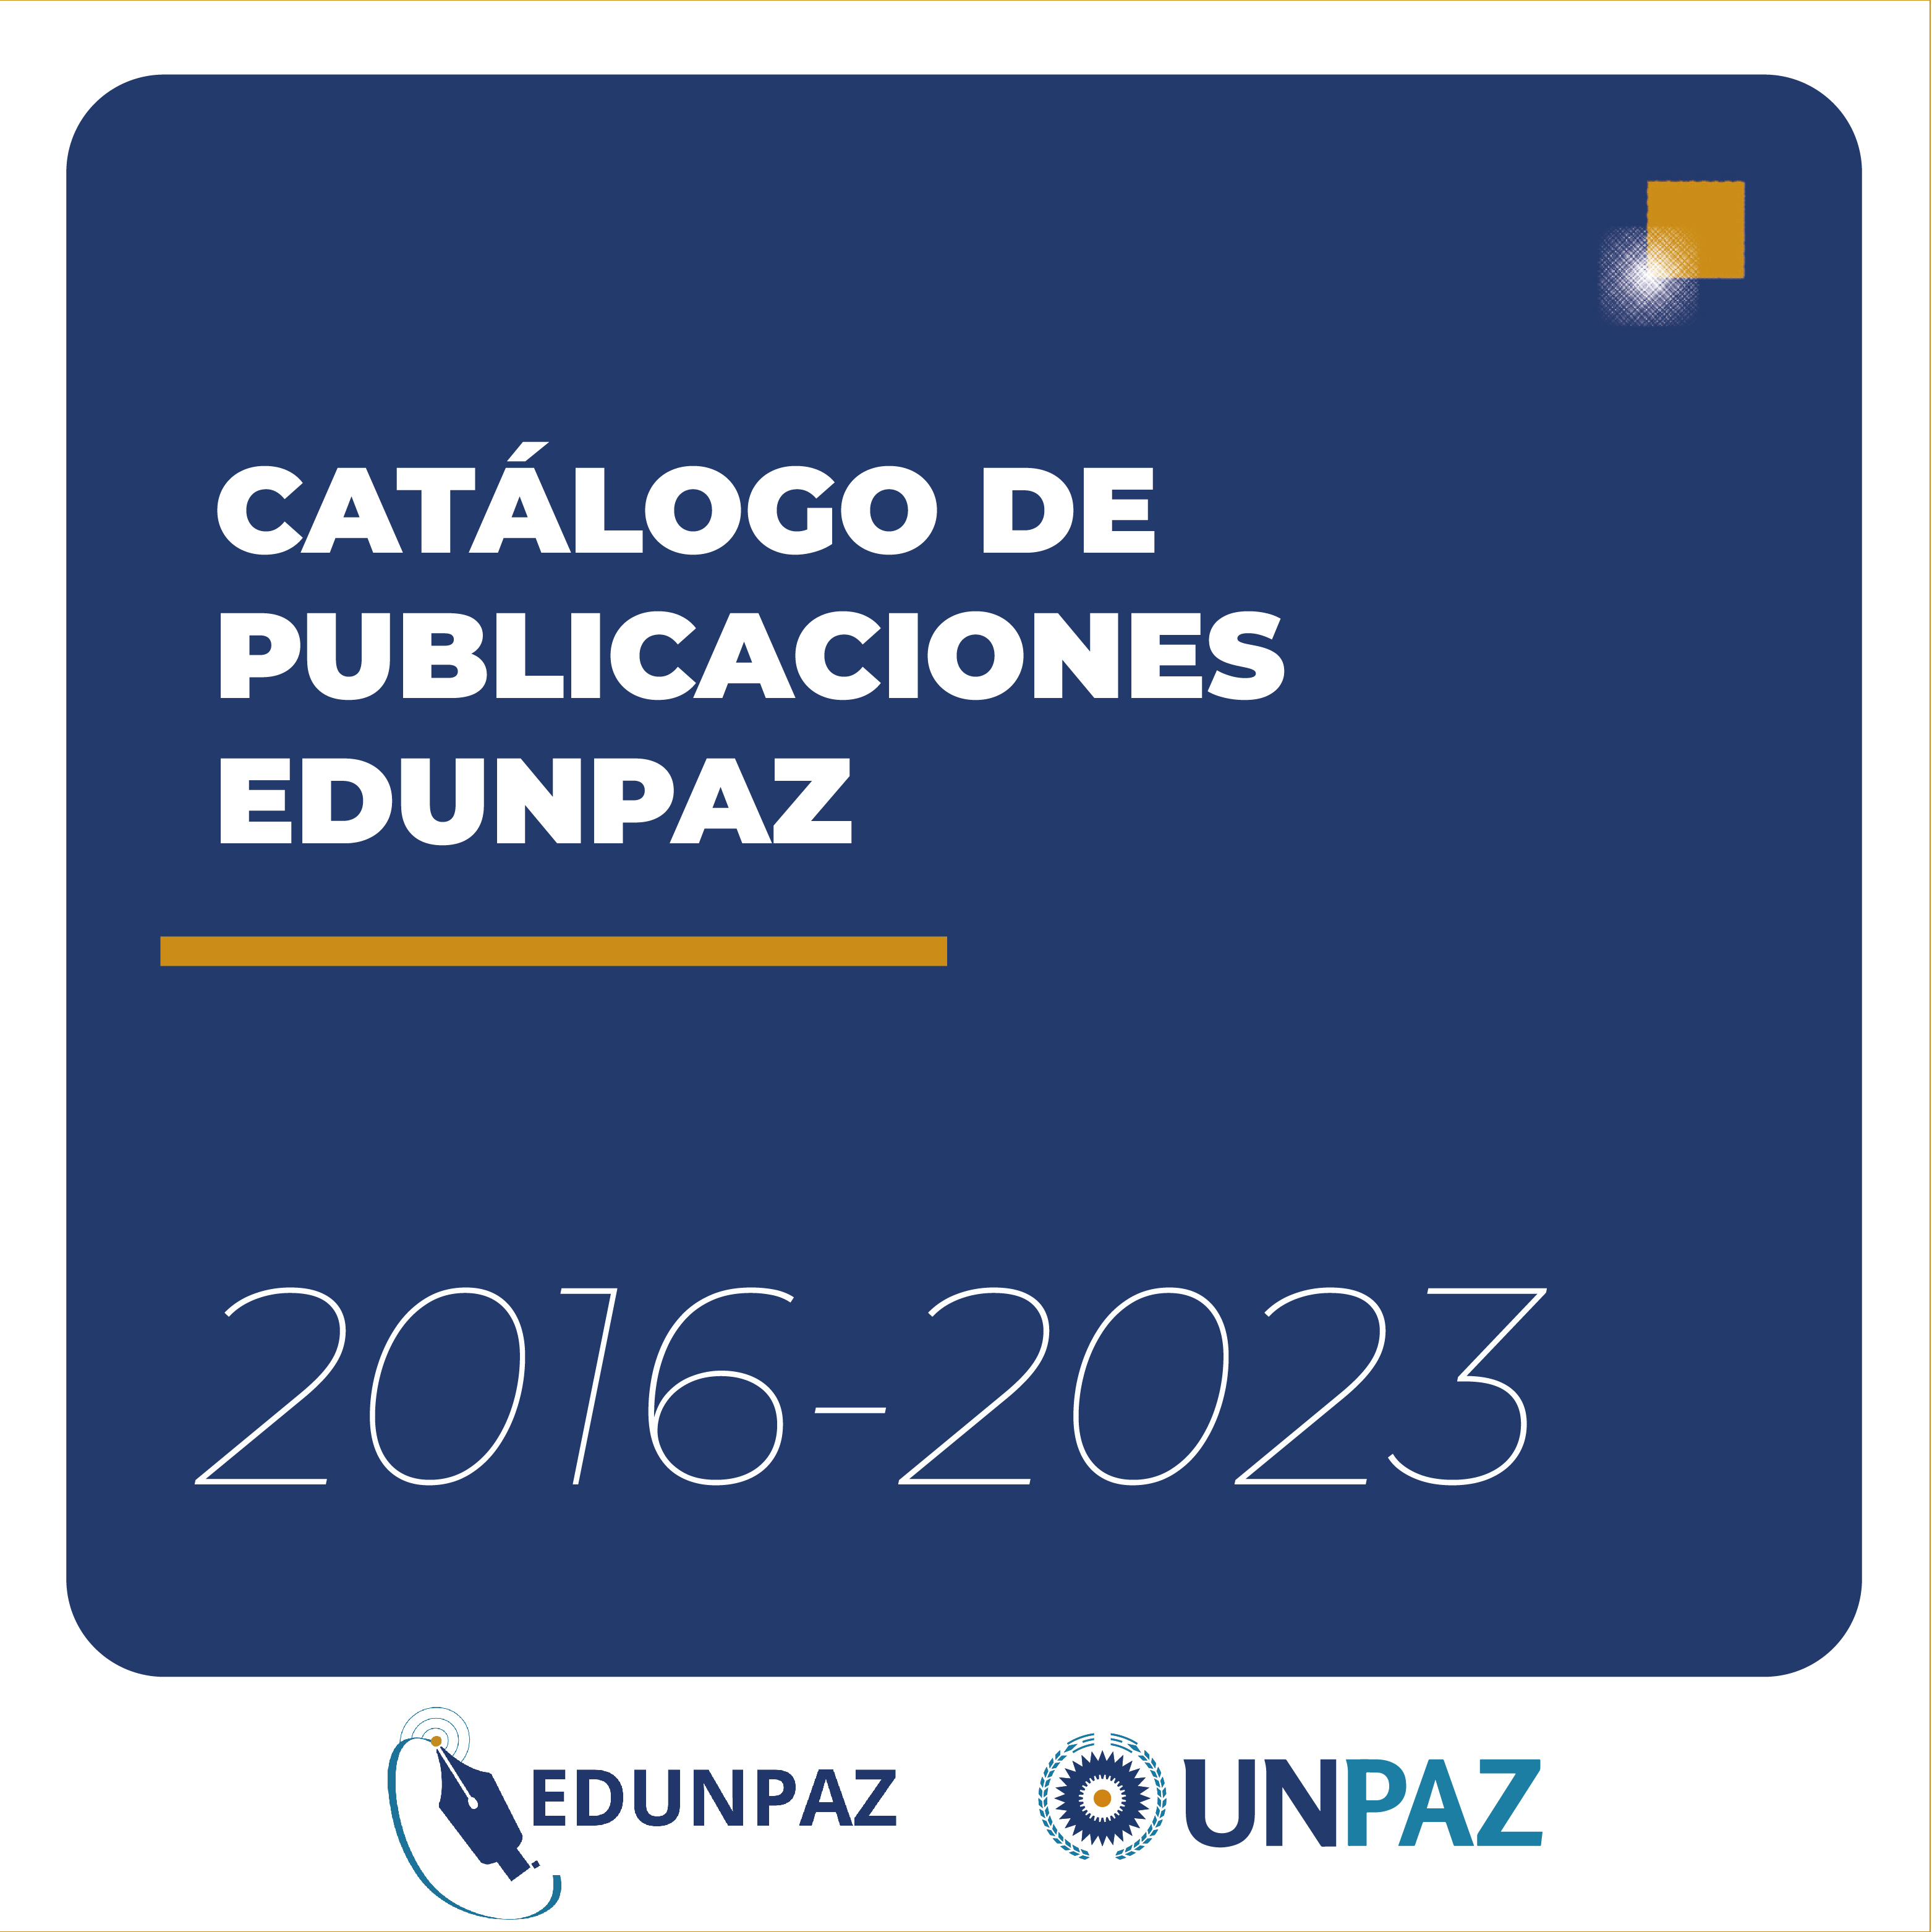 Catálogo EDUNPAZ: publican un detalle de las publicaciones realizadas por la editorial desde su creación